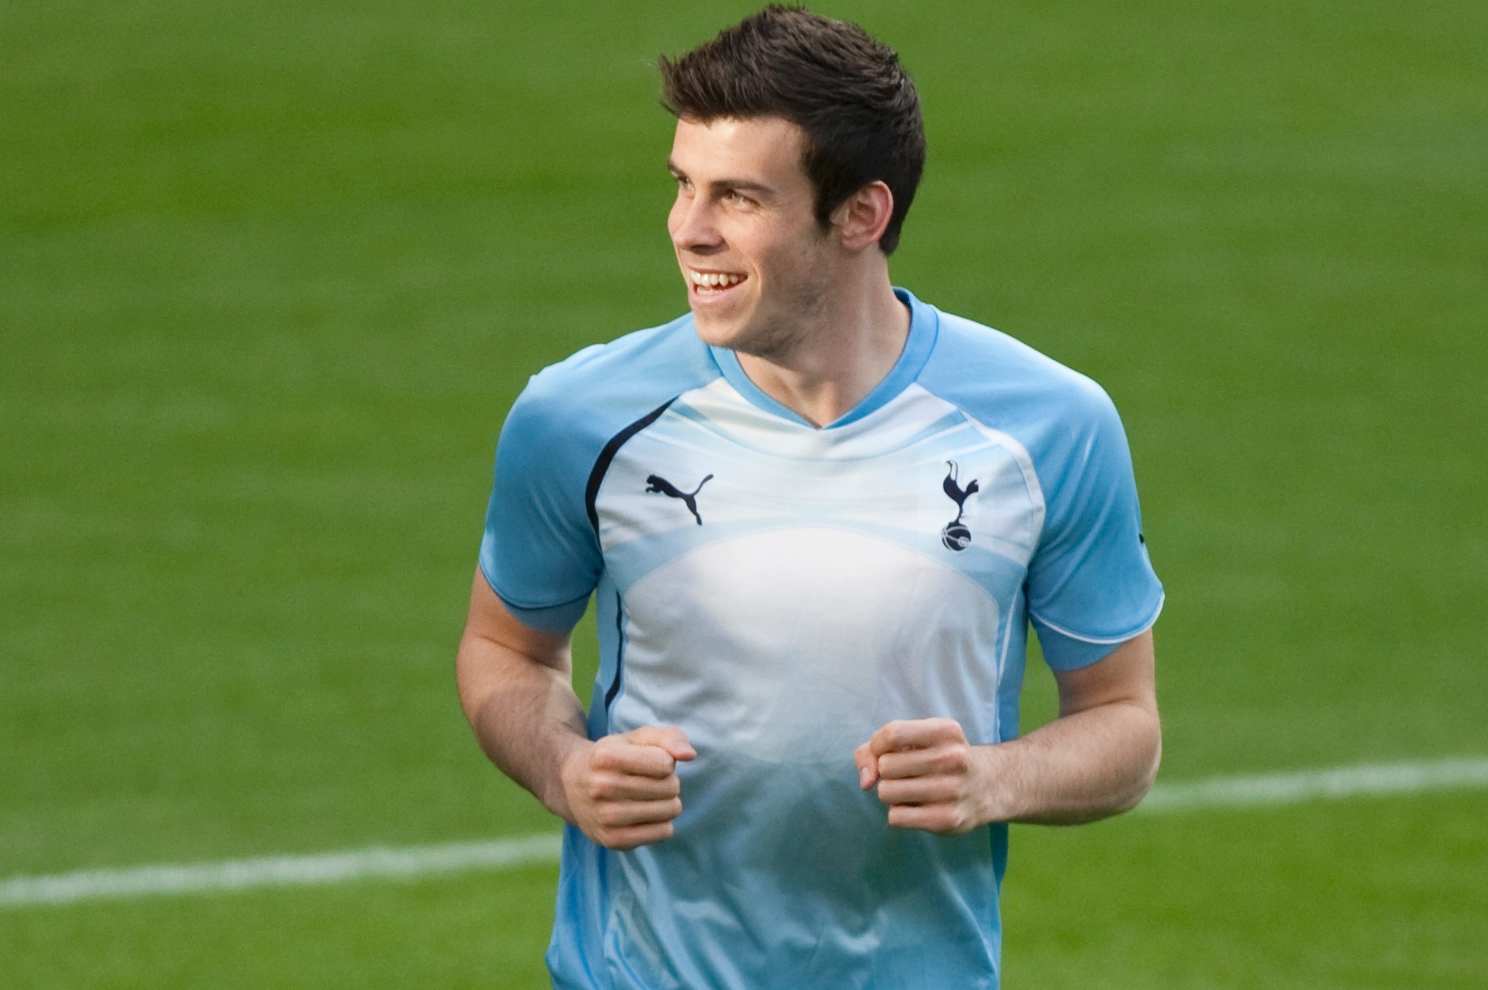 Gareth Bale kan stanna kvar i Tottenham: "Jag trivs riktigt bra här".